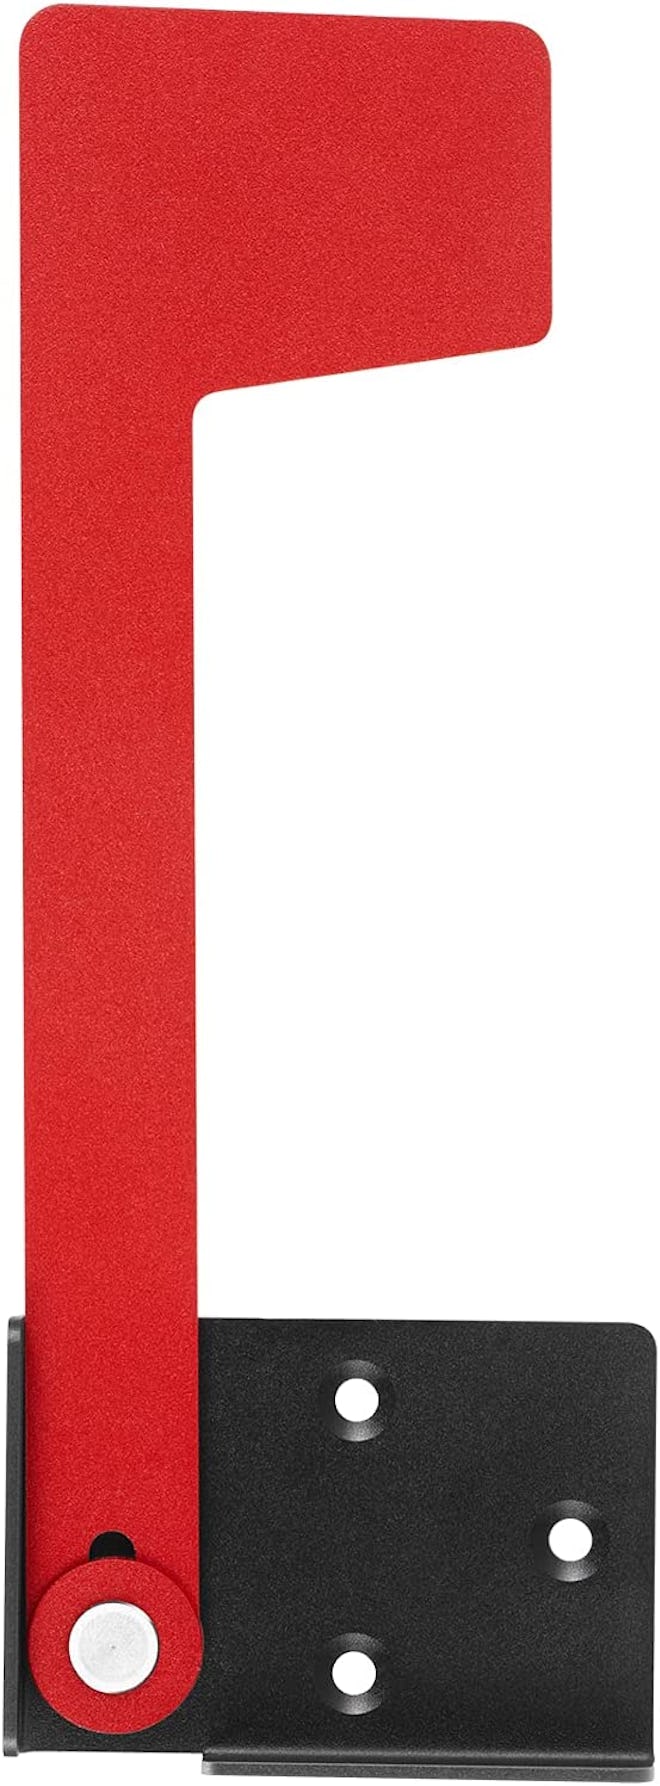 Ozland Professional Mailbox Flag